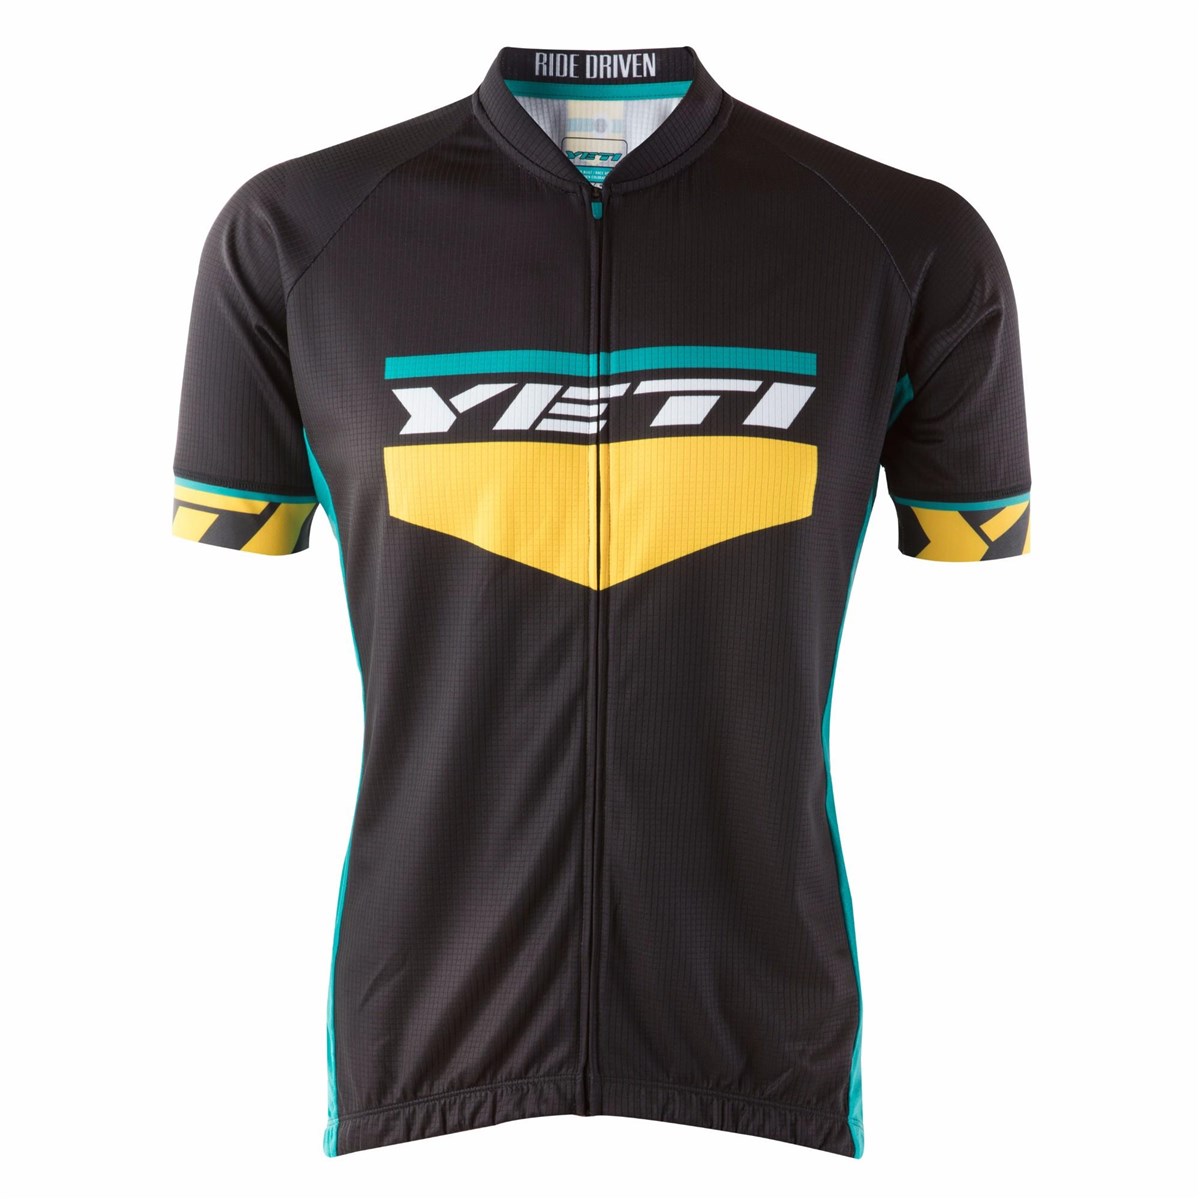 Yeti Ironton XC Short Sleeve Jersey product image